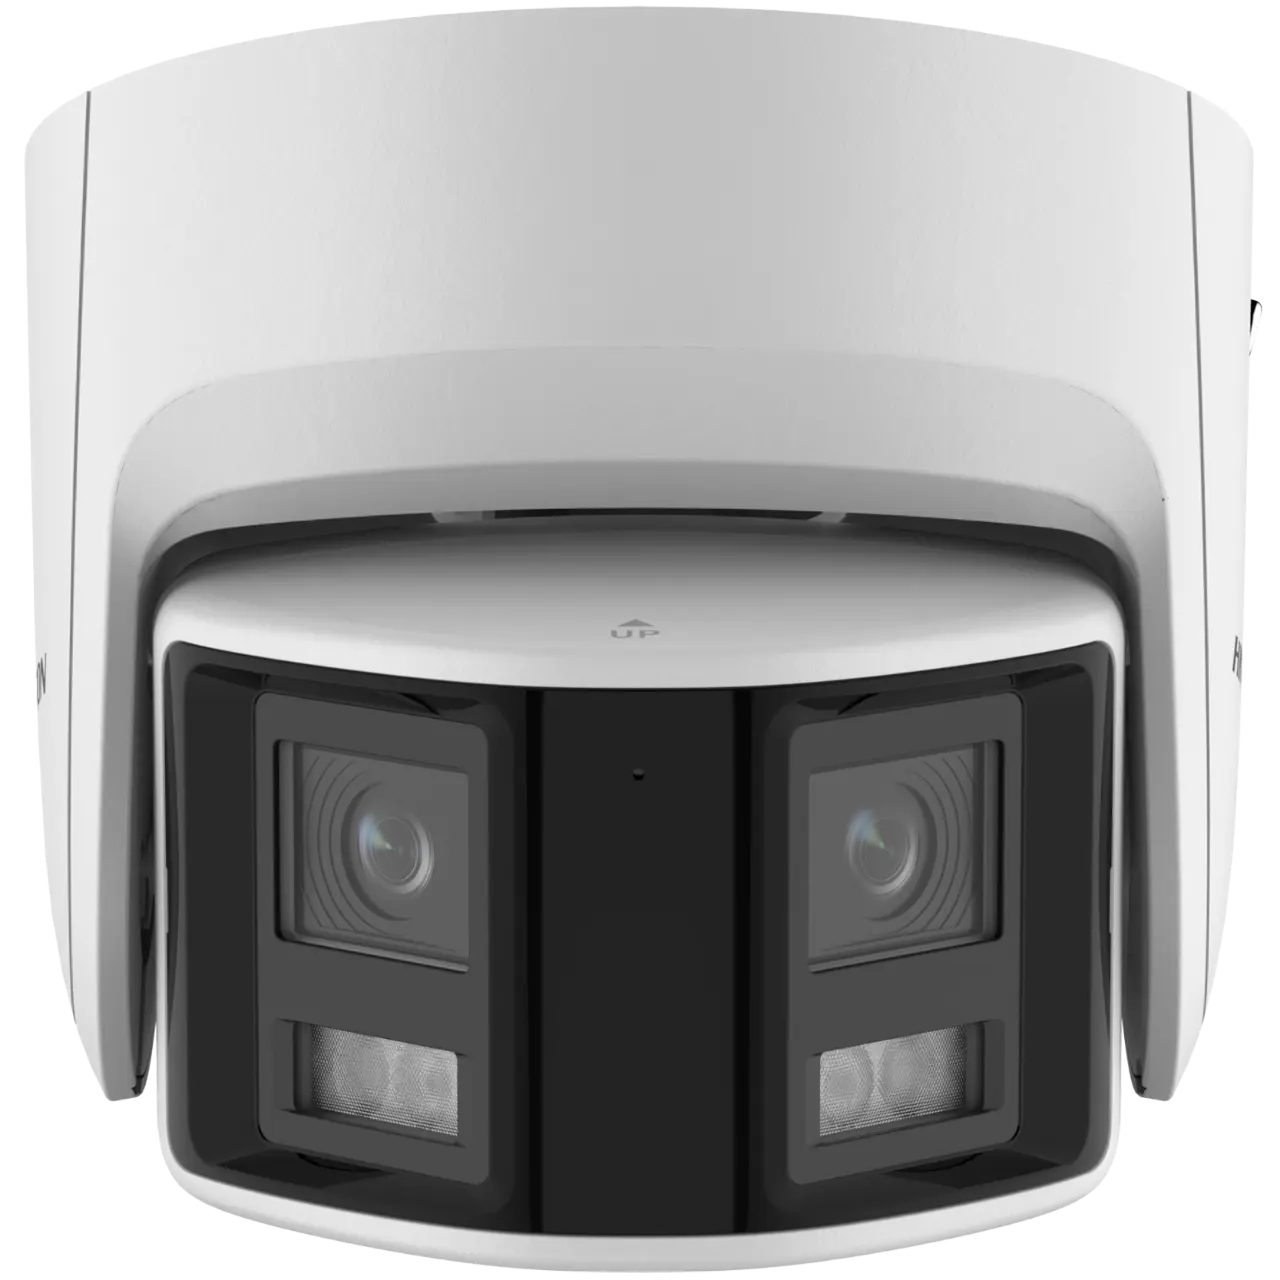 ANPVIZ Kamera CCTV 4K POE, kamera panorama lensa ganda, gambar 180 derajat, deteksi suara manusia/kendaraan & alarm flash bicara 2 arah